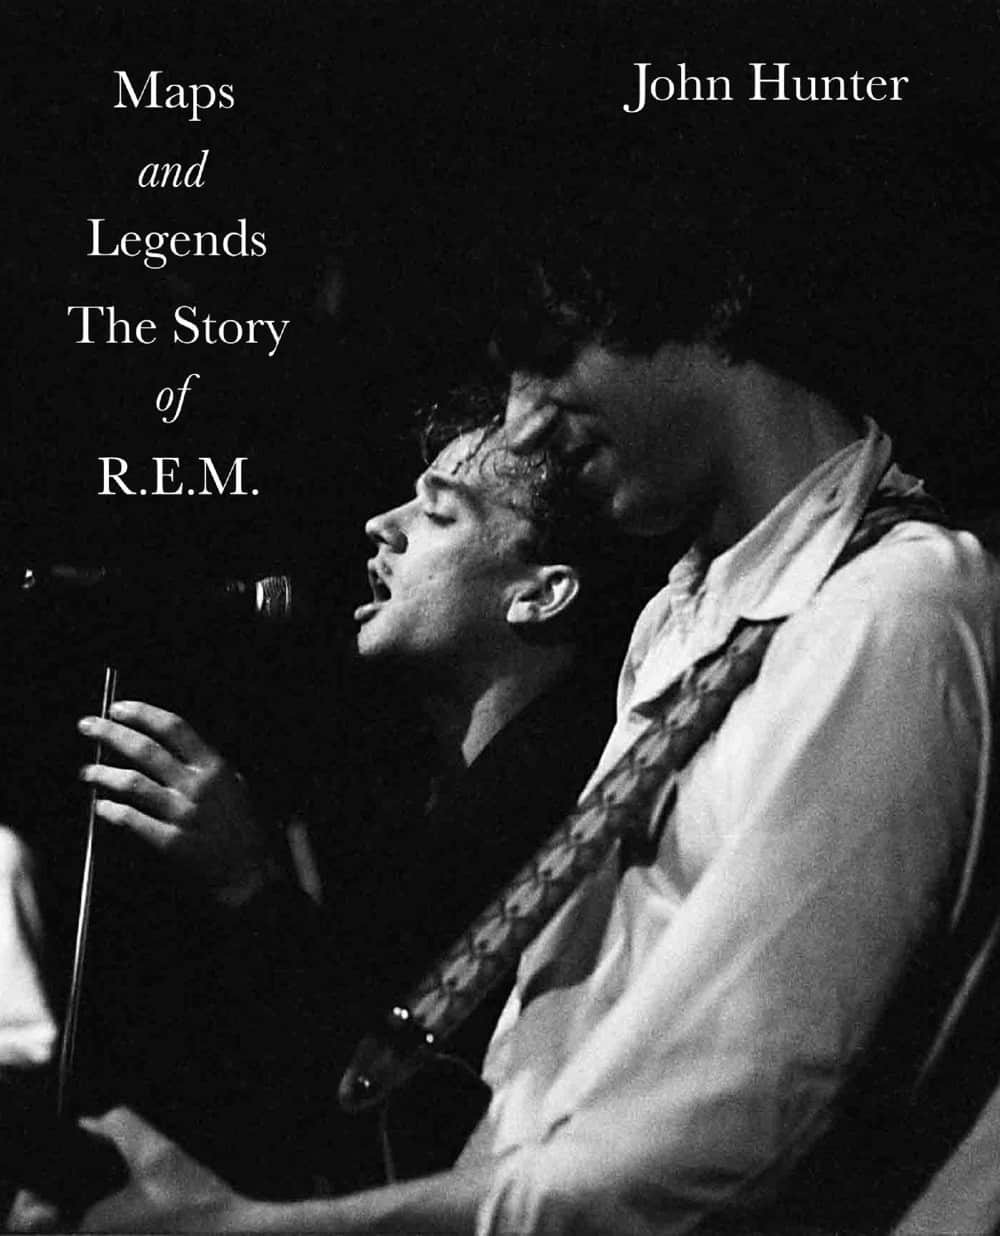 Comprehensive New R.E.M. Biography 